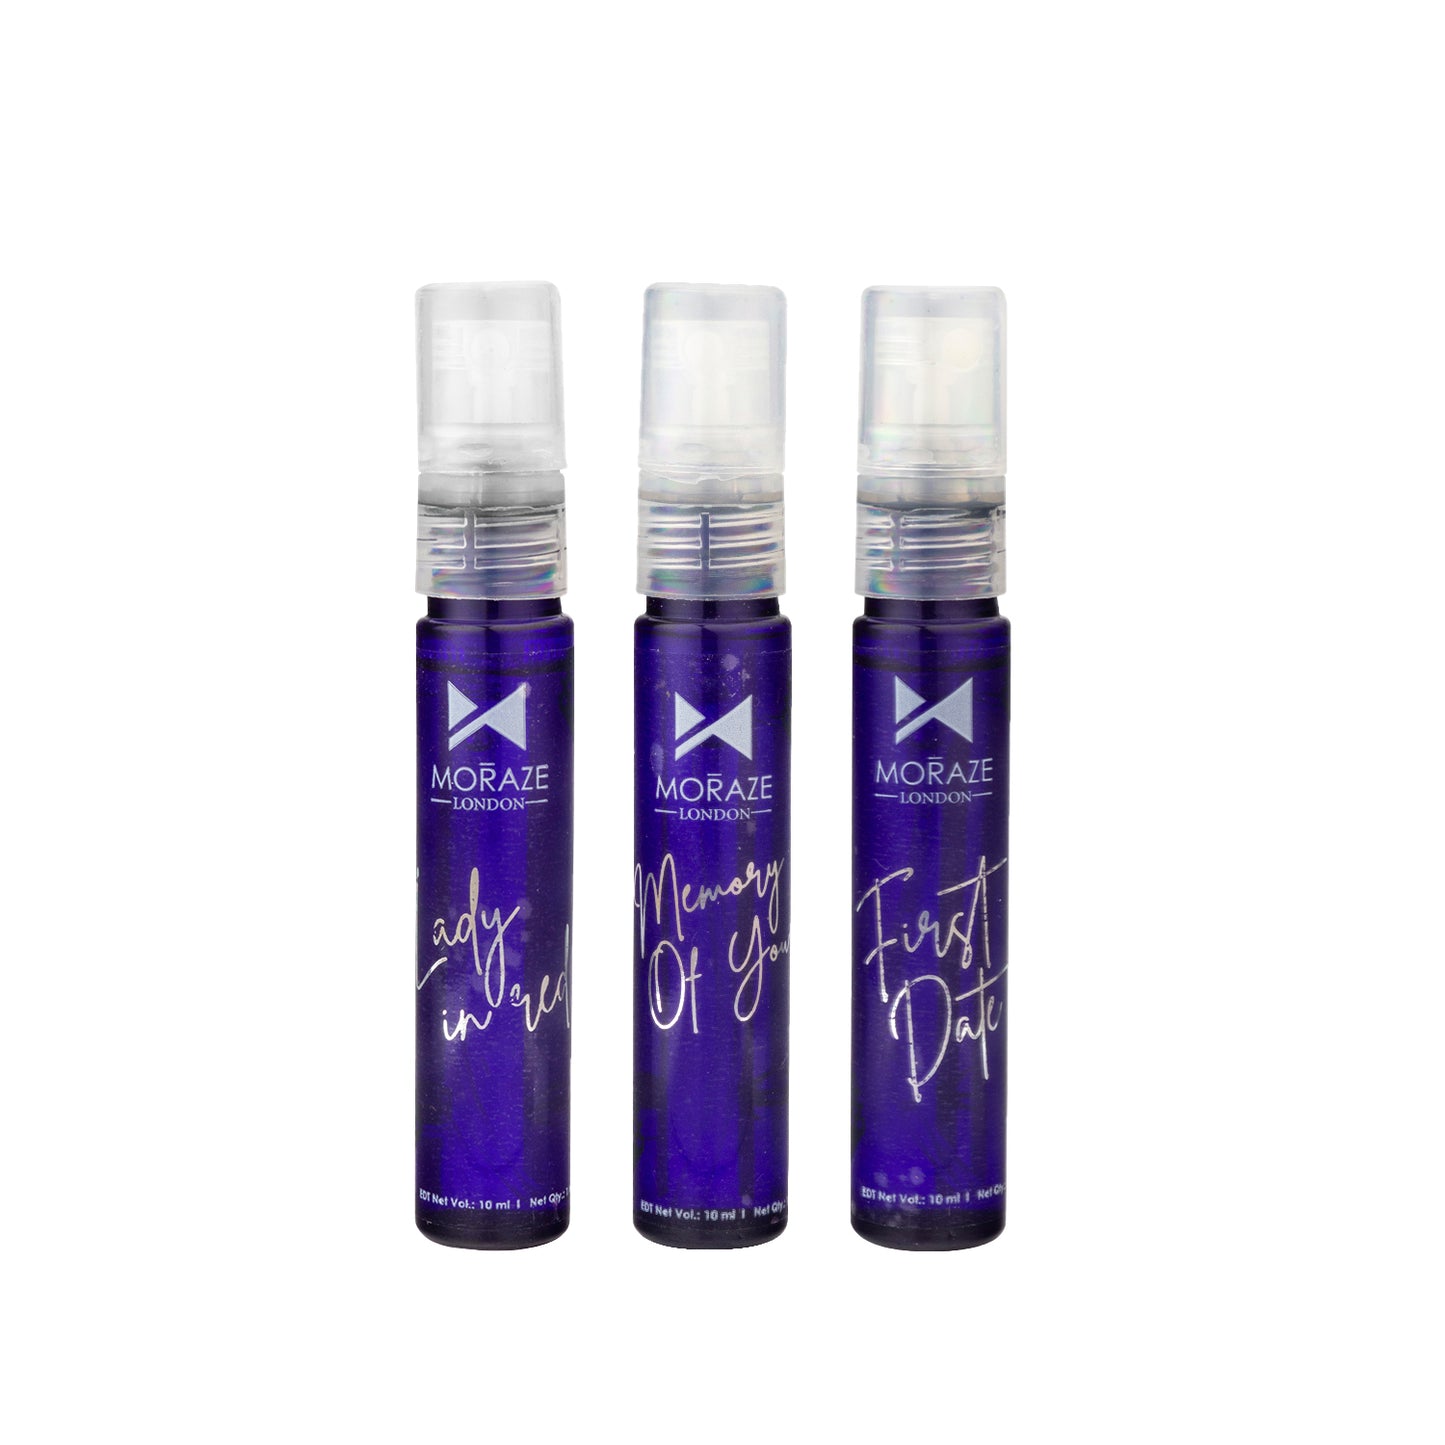 Moraze London Long Lasting Pack of 3 - 10 Ml  Perfume Set  For Men & Women.